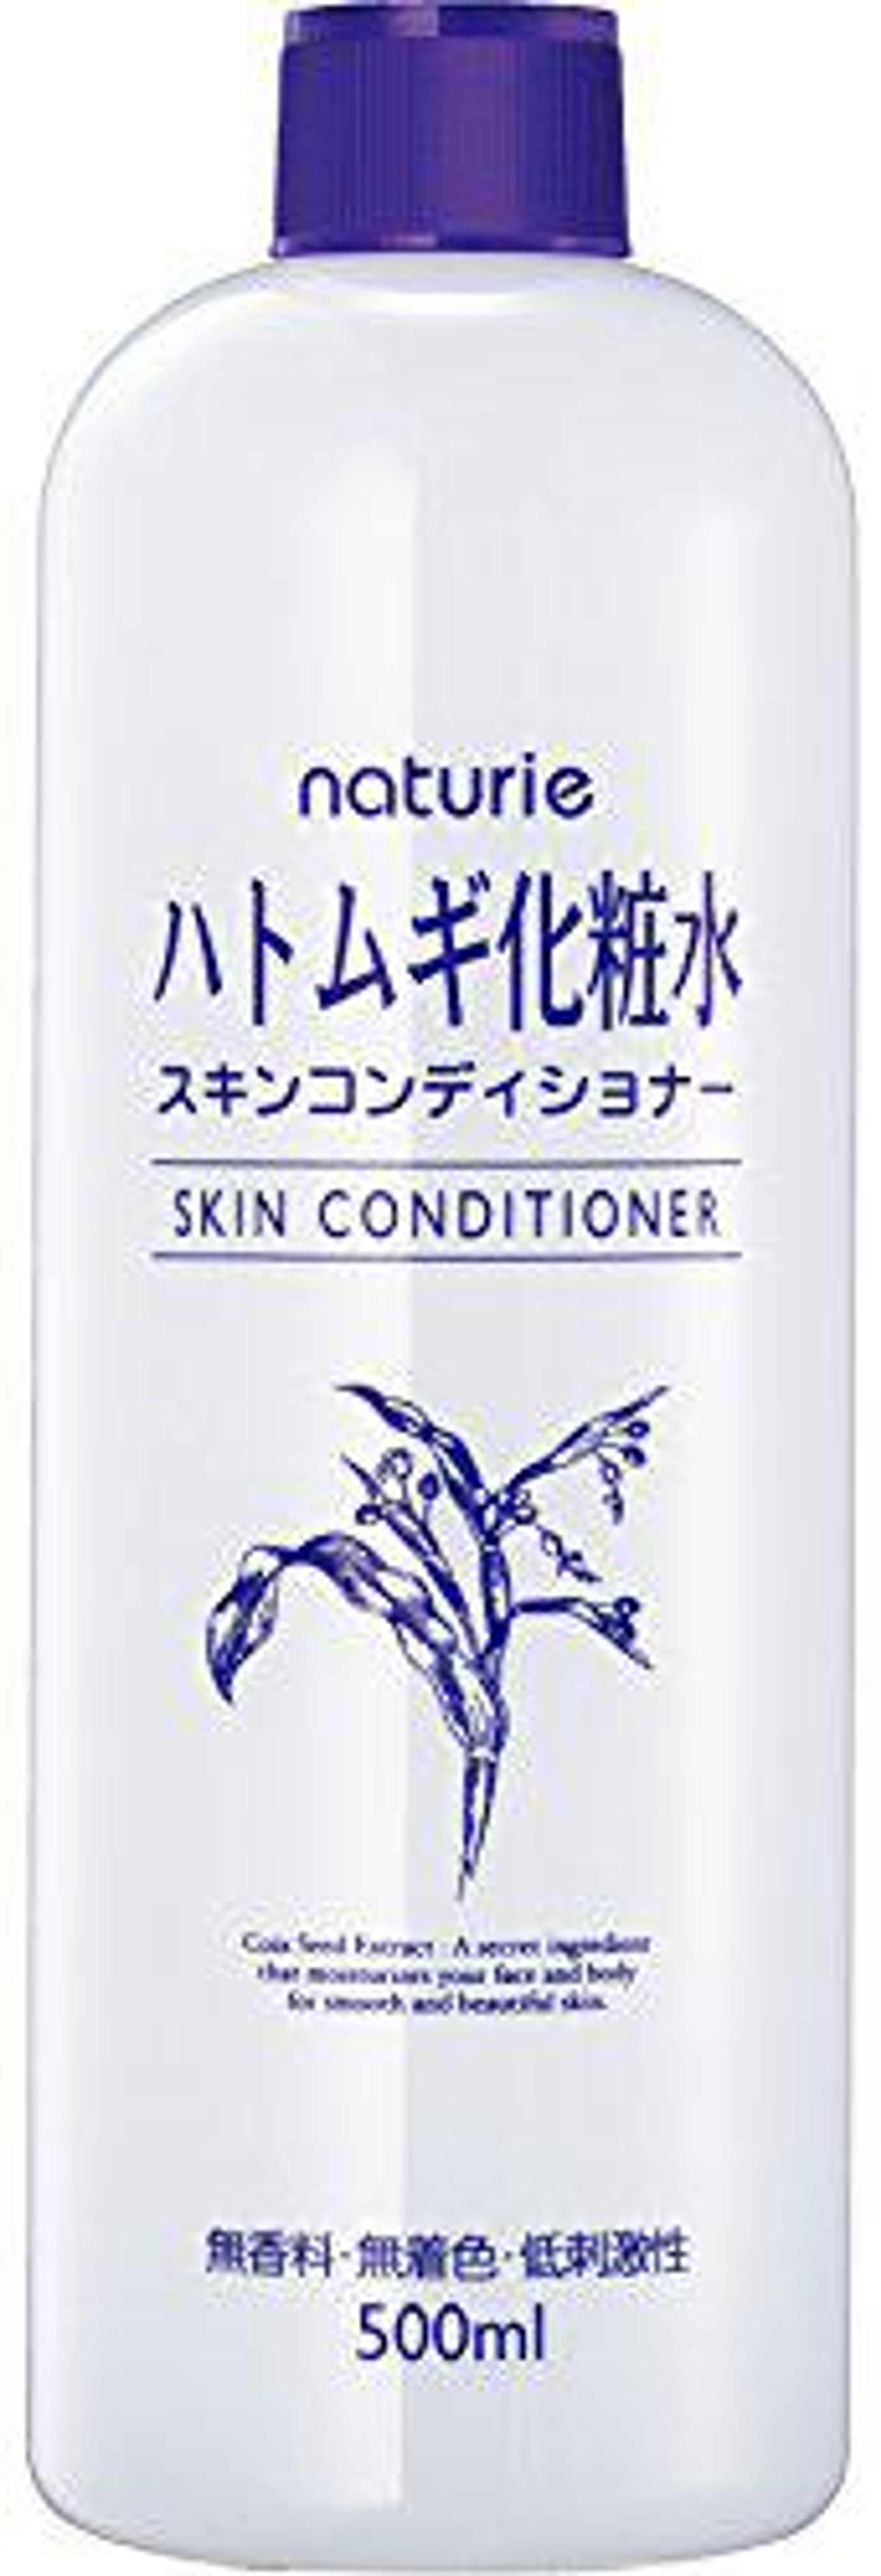 naturie skin conditioner